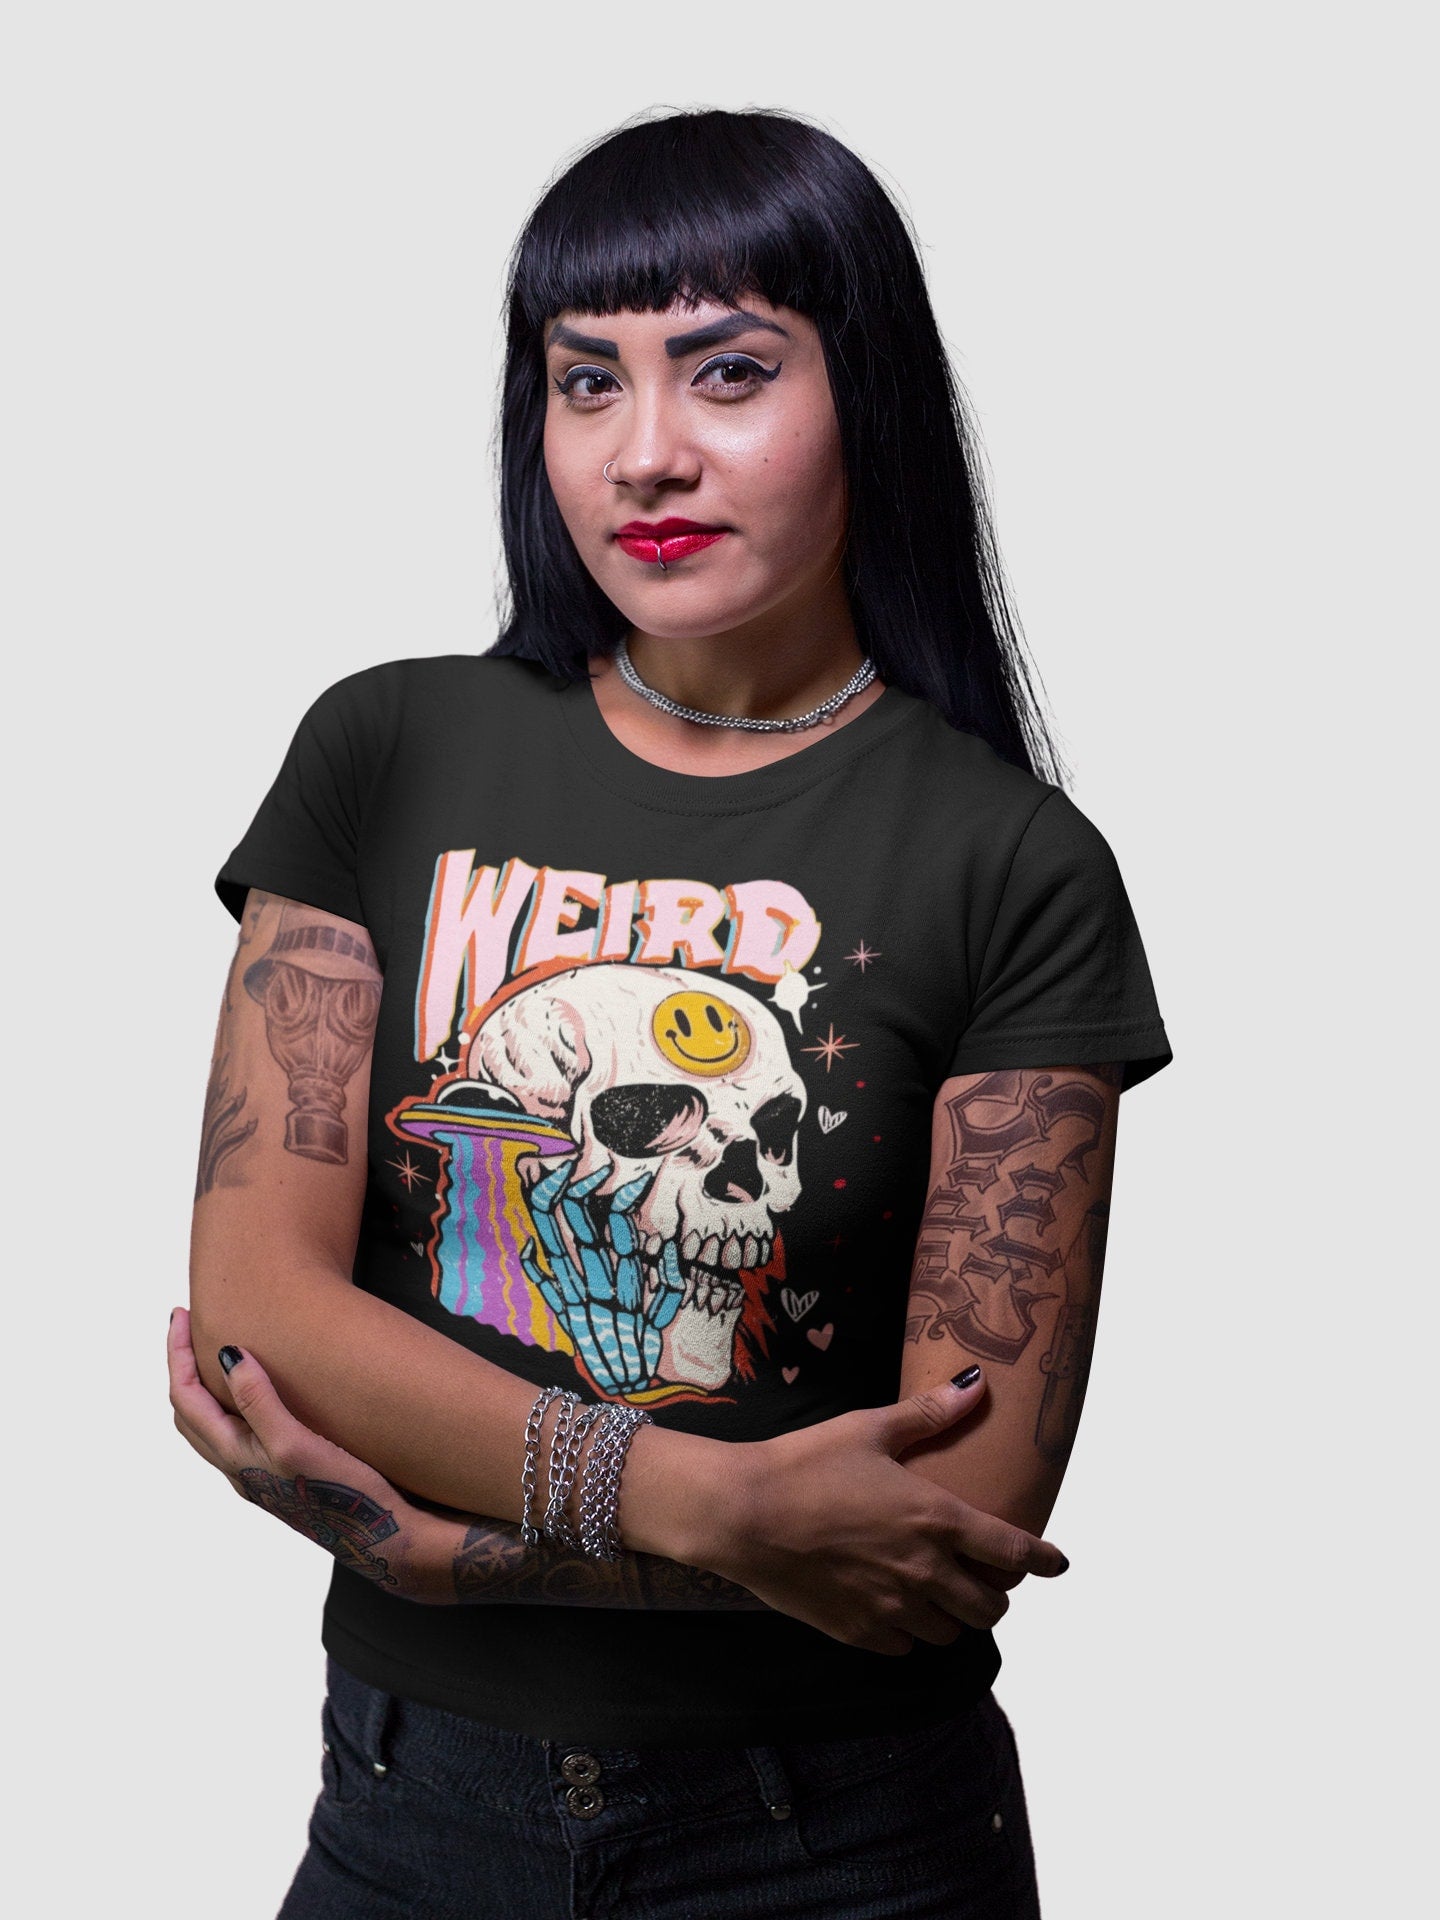 Weird Skull T-shirt, Cotton Unisex Style, Adult Tee